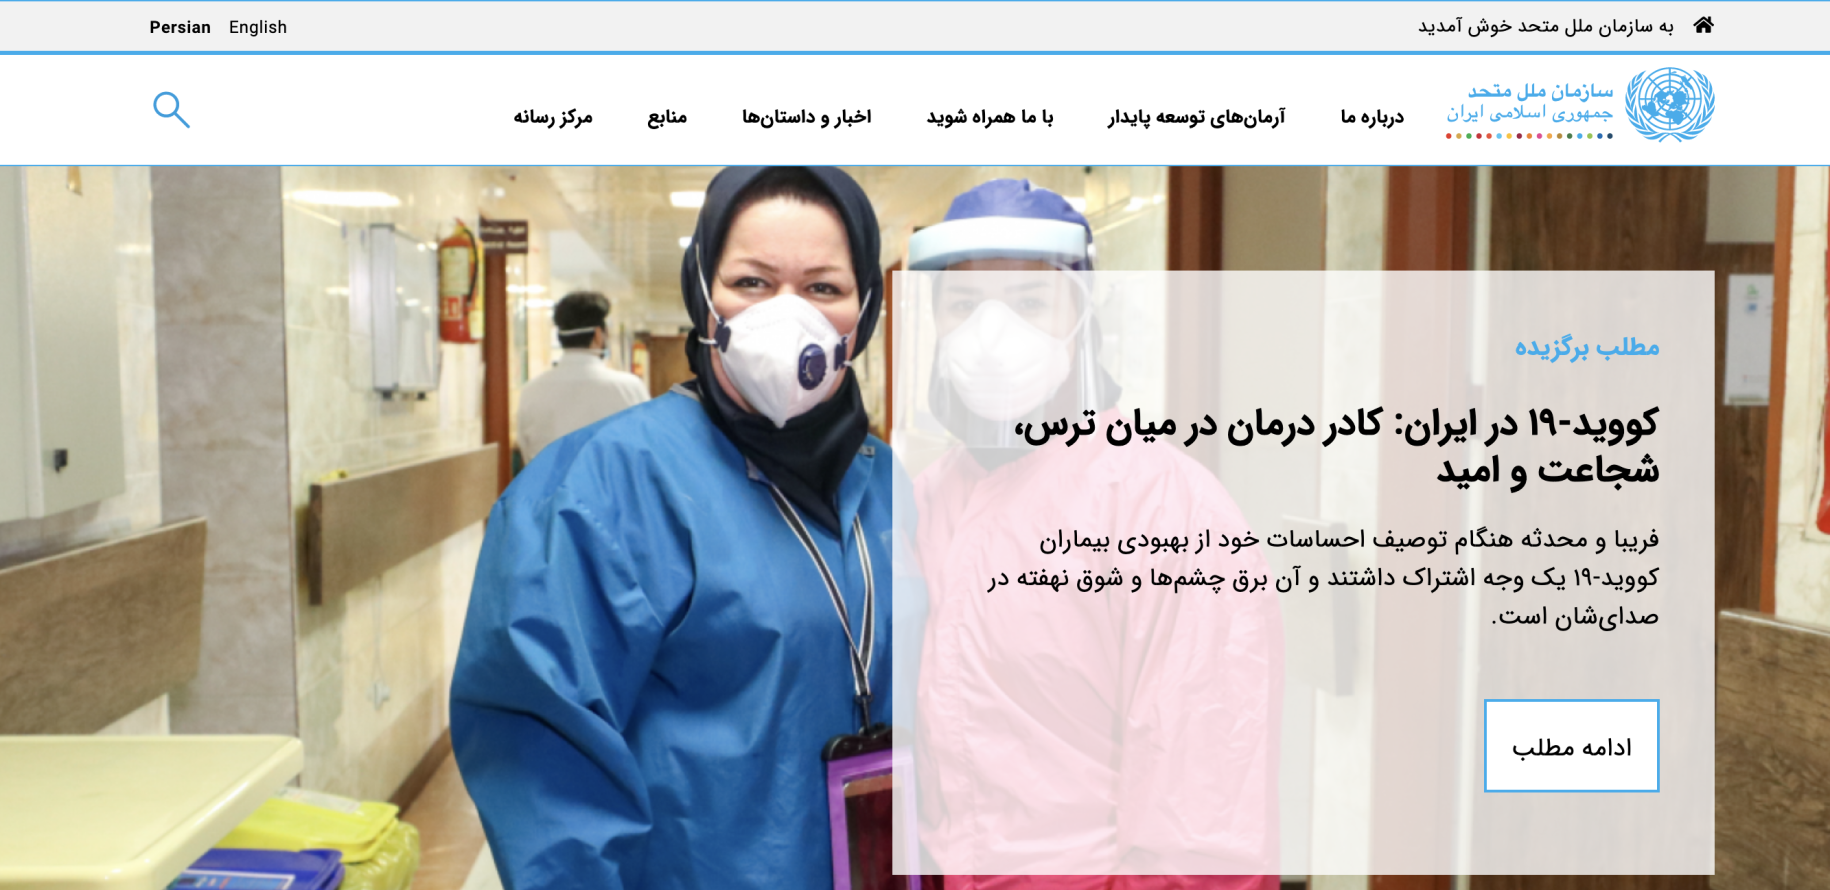 لقطة من موقع إيران باللغة الفارسية.